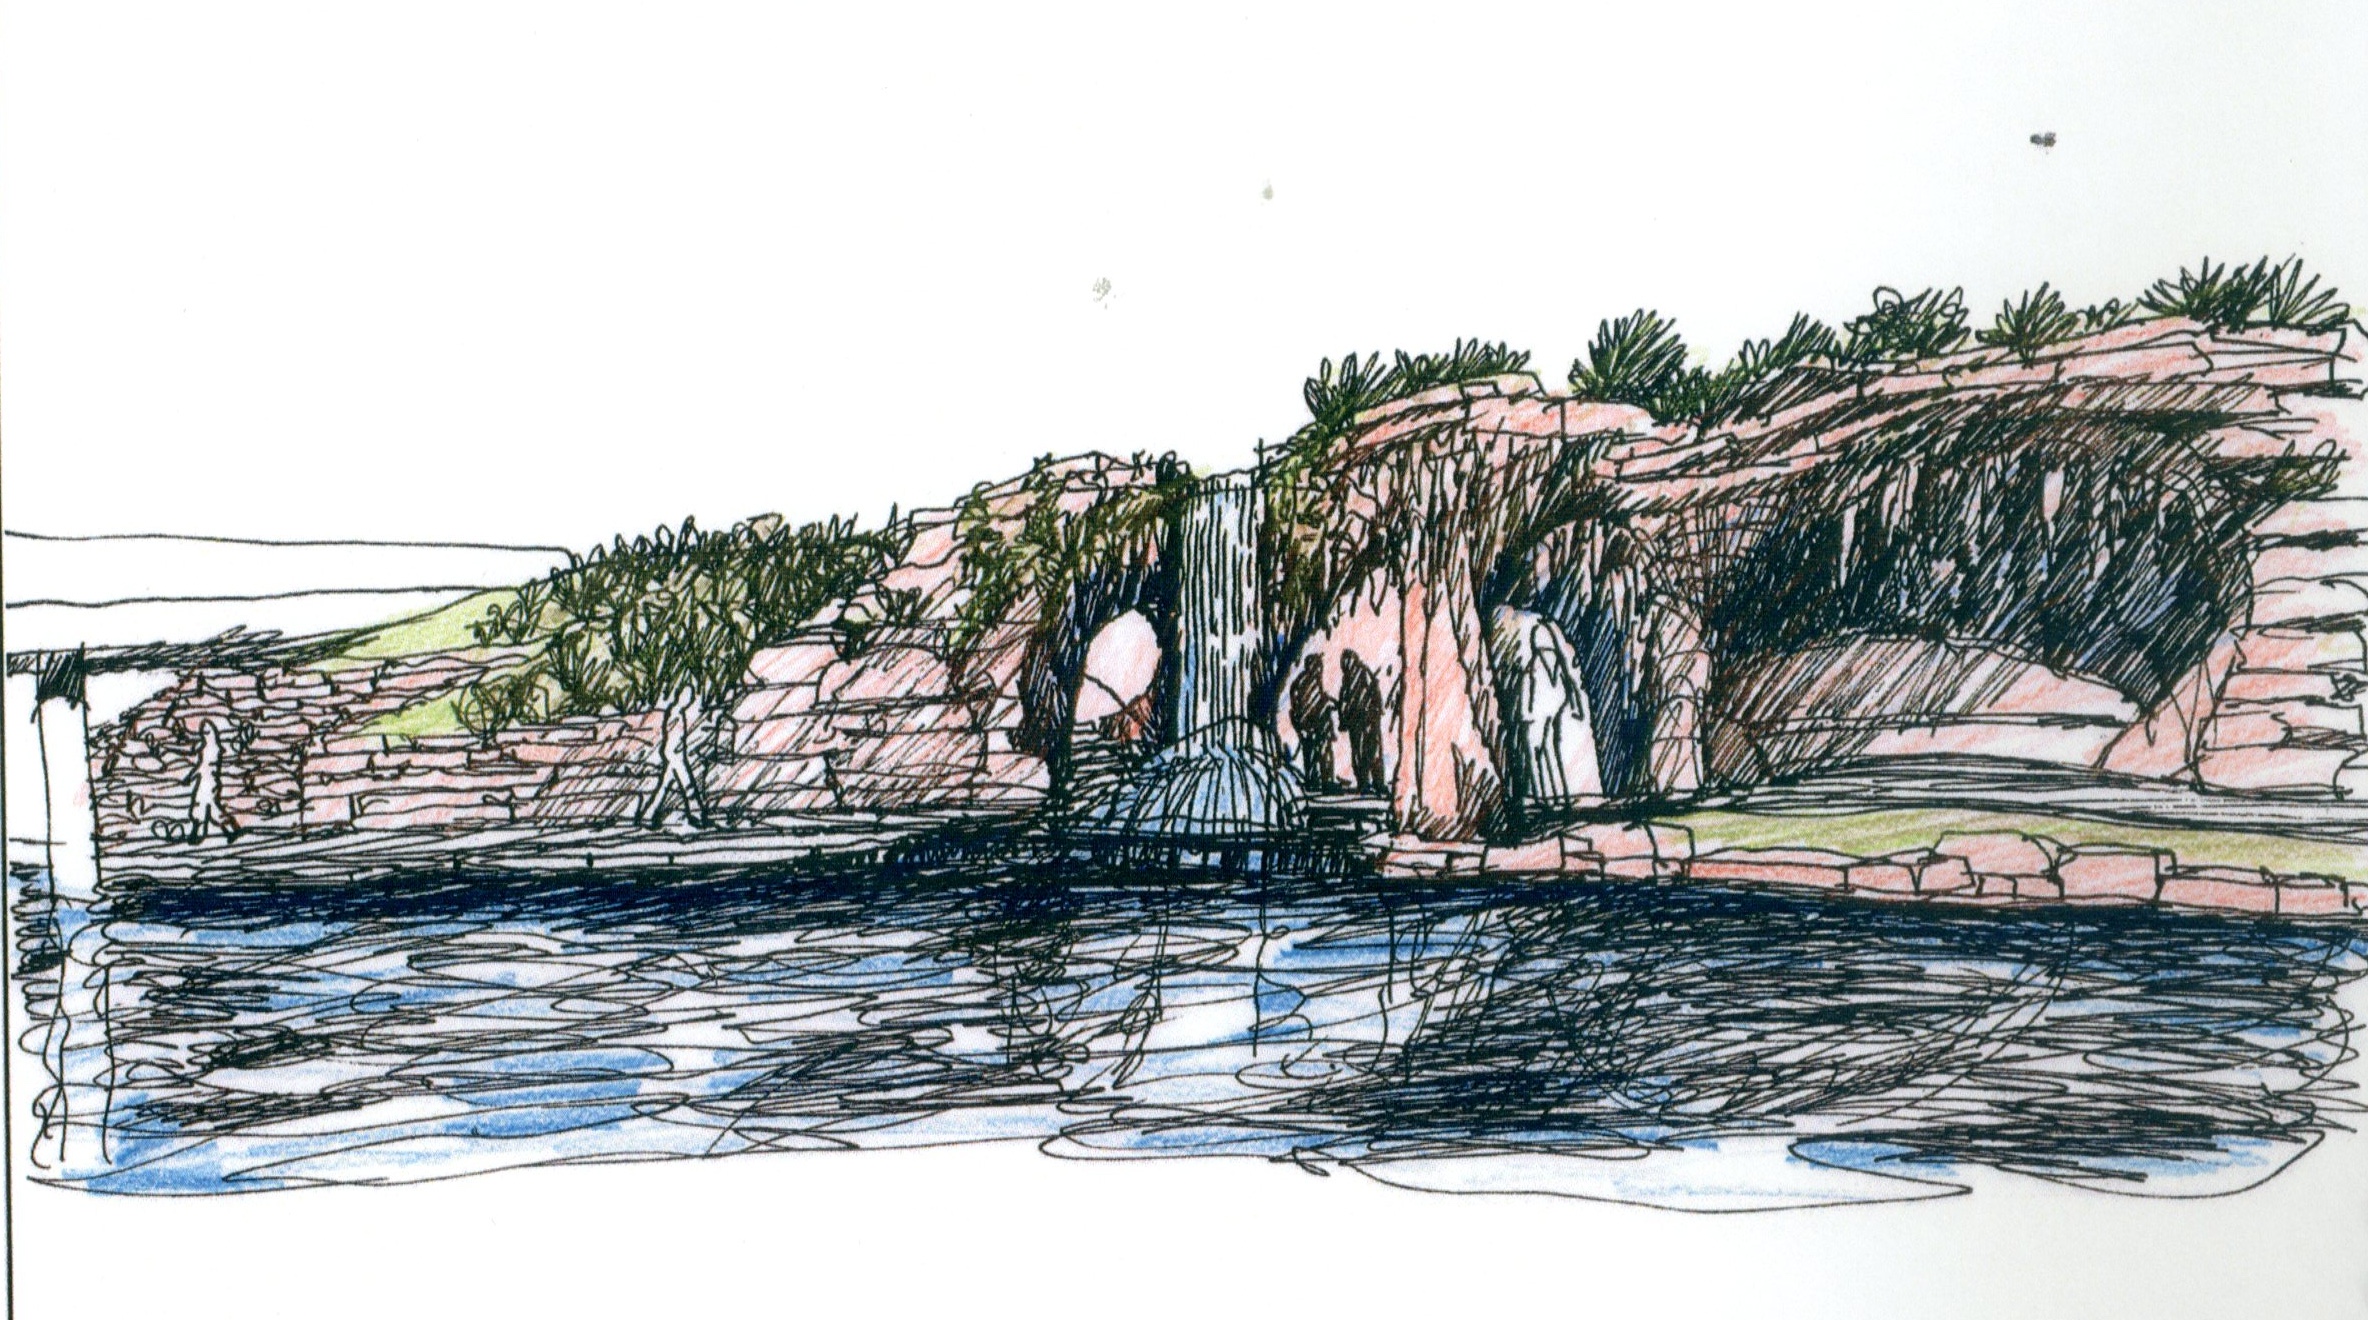 Conceptual drawing of San Antonio River grotto